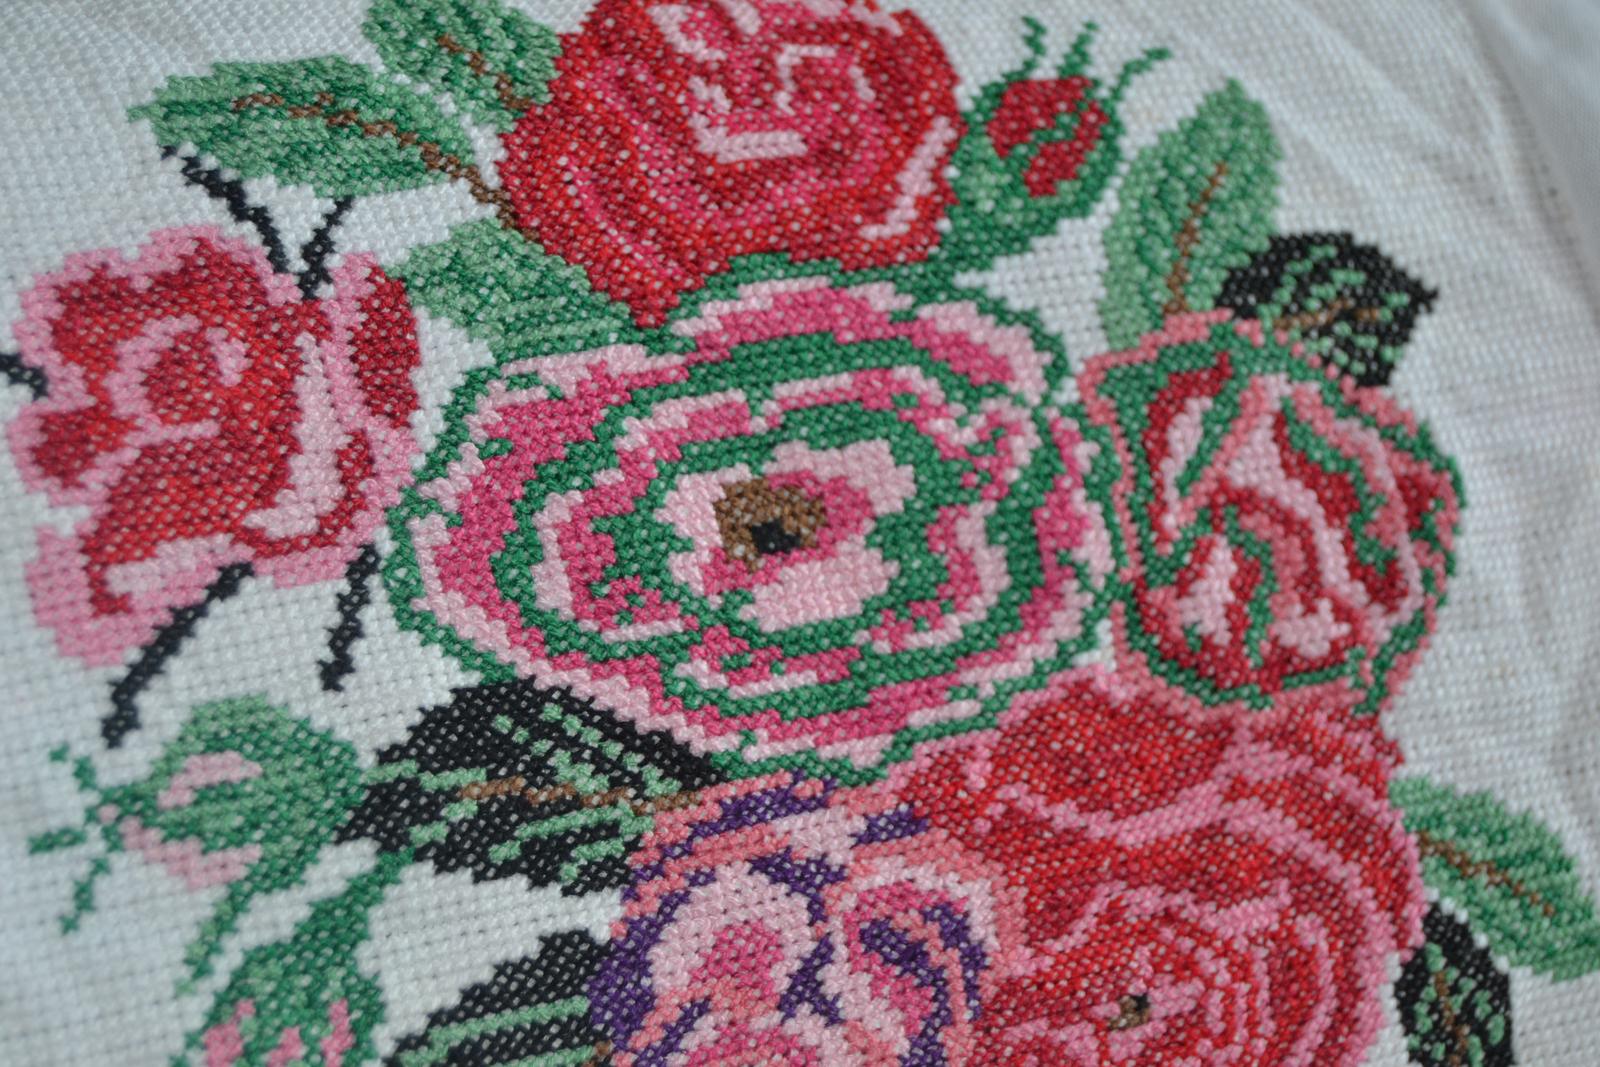 Vyšívaný obrázok Kytica ruží 30x20 cm Hand made - Obrázok č. 1